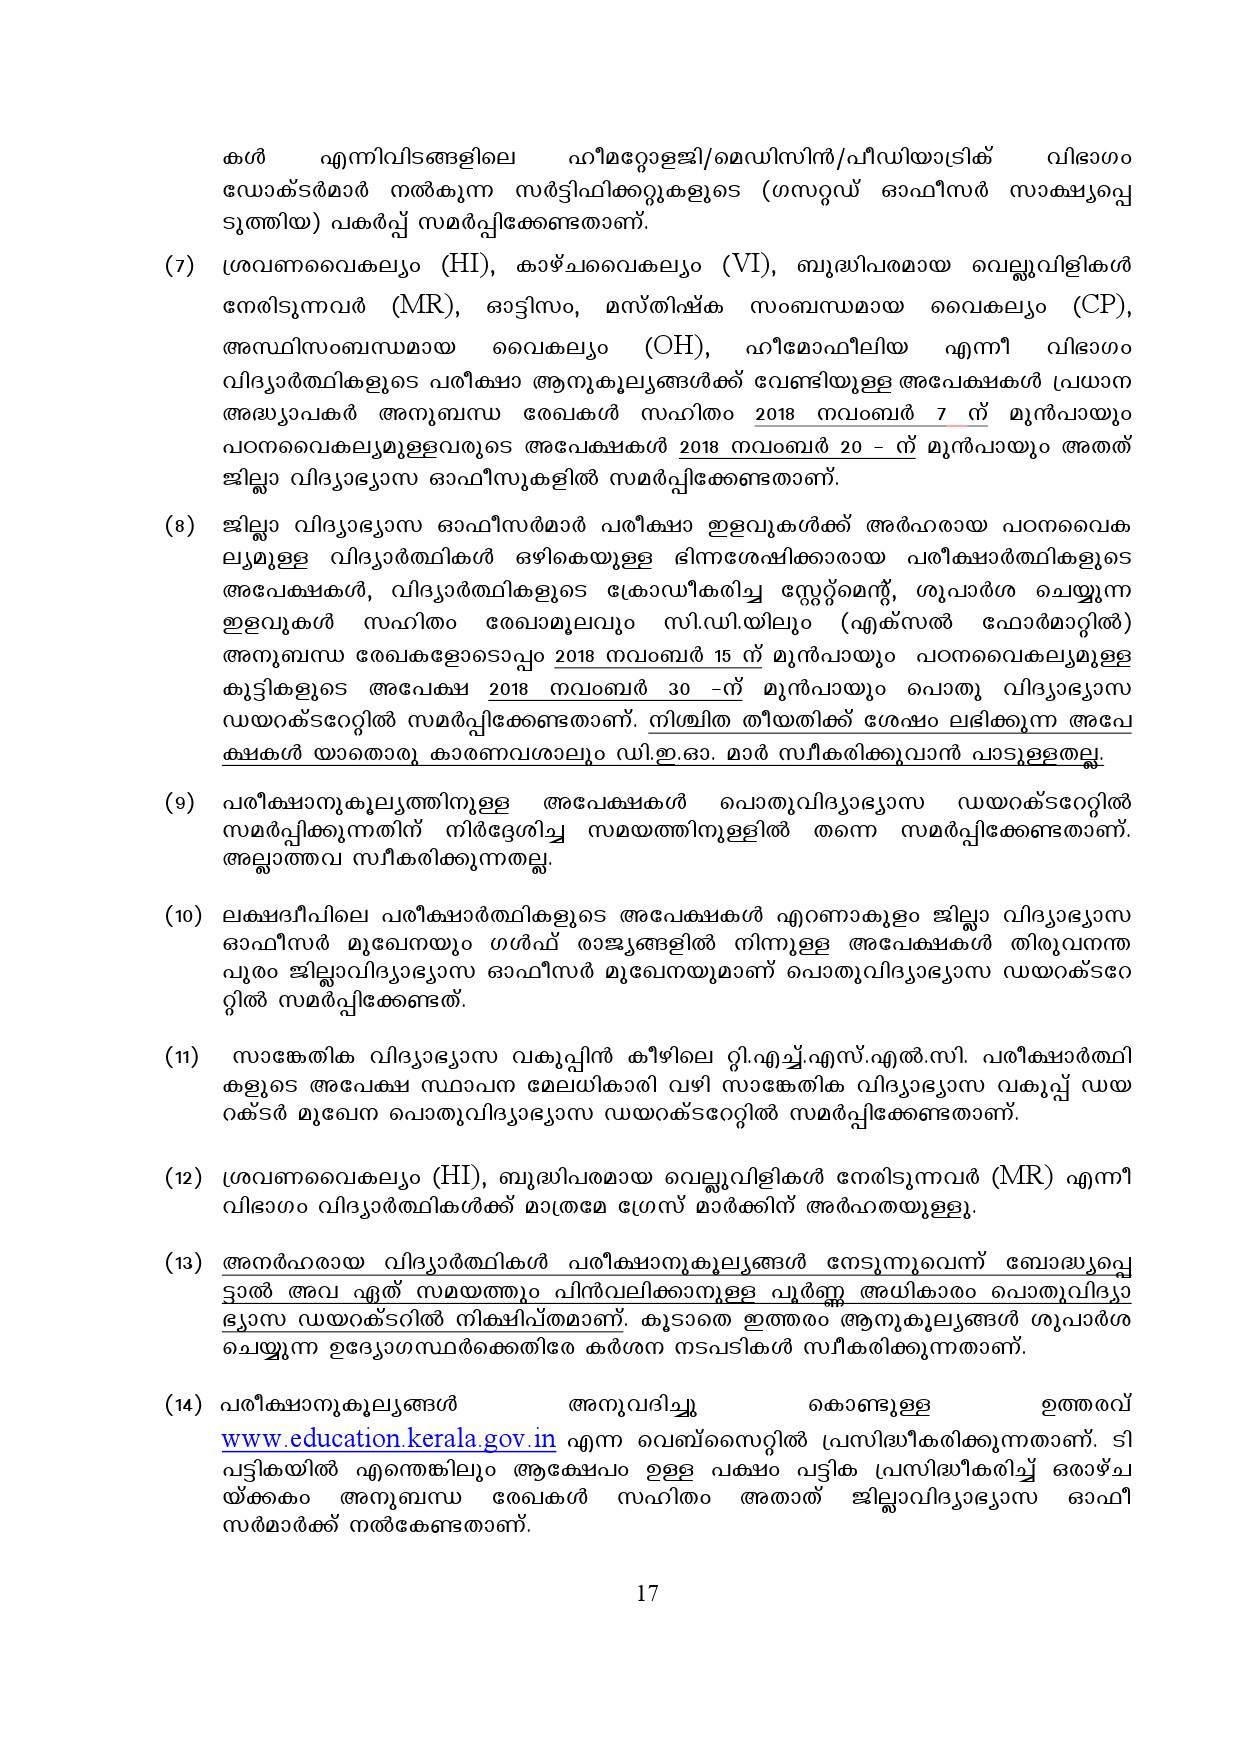 Kerala SSLC Exam Result 2019 - Notification Image 17